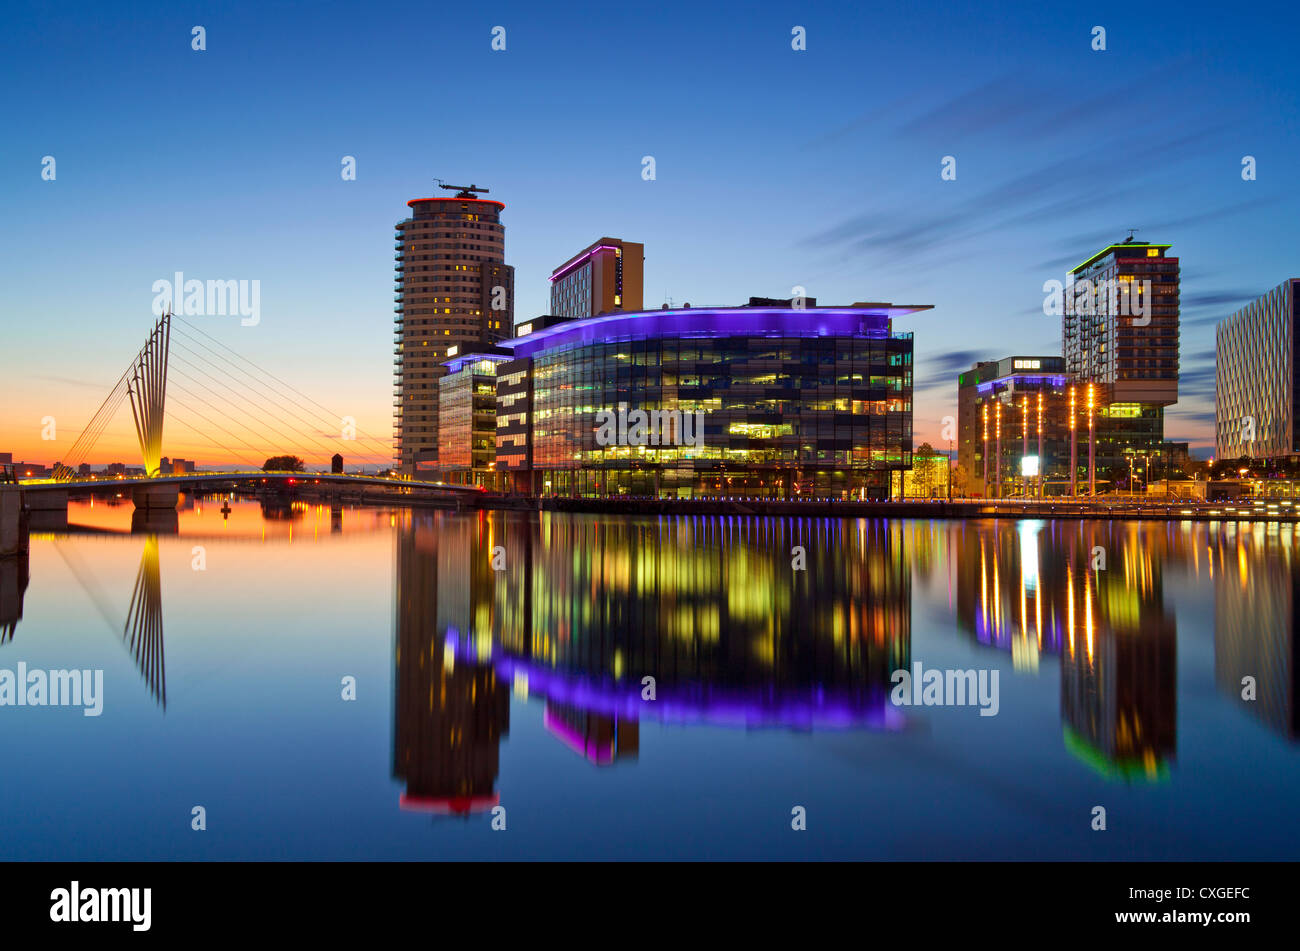 Inglaterra, Greater Manchester, Salford Quays, Media City y el puente colgante en penumbra Foto de stock